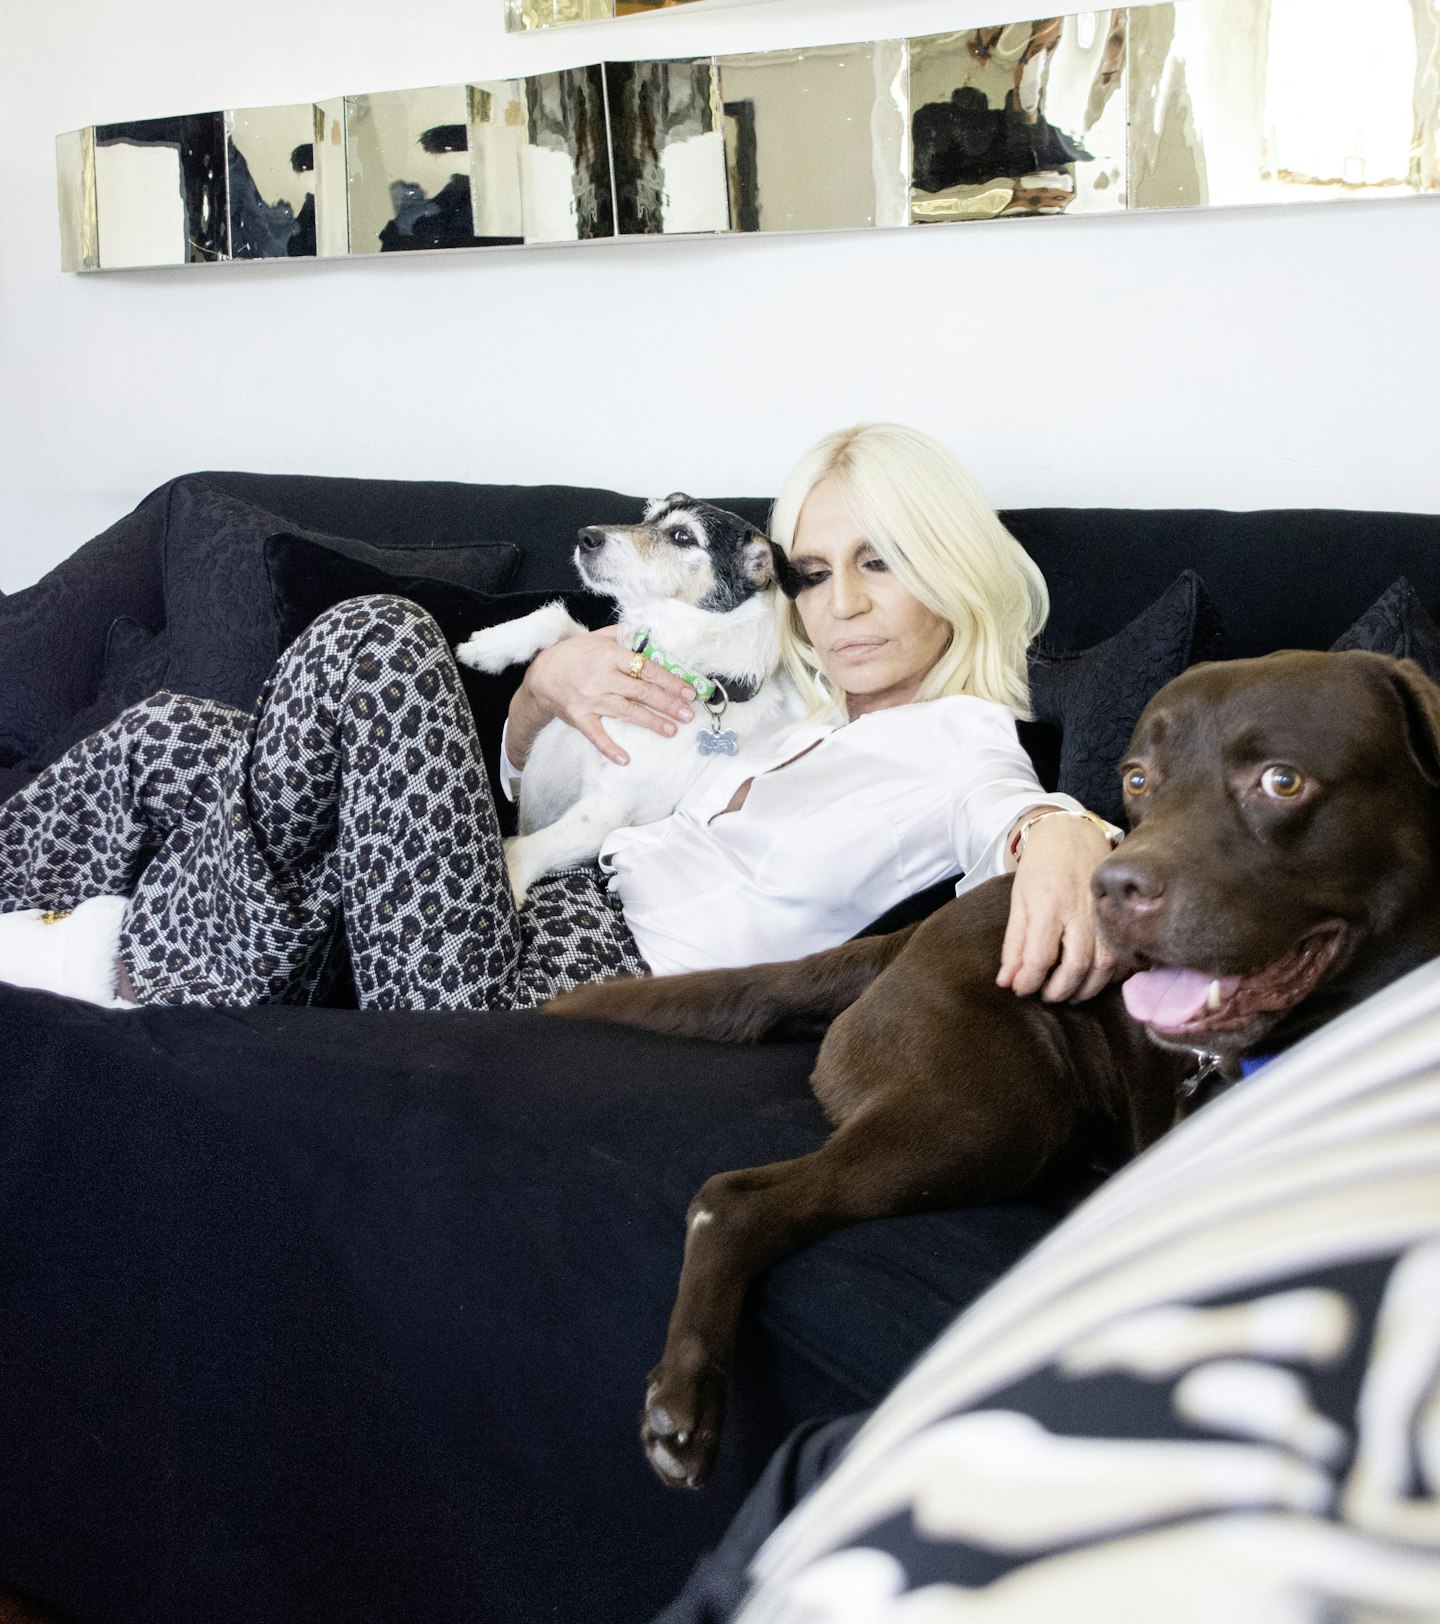 Donatella Versace at home